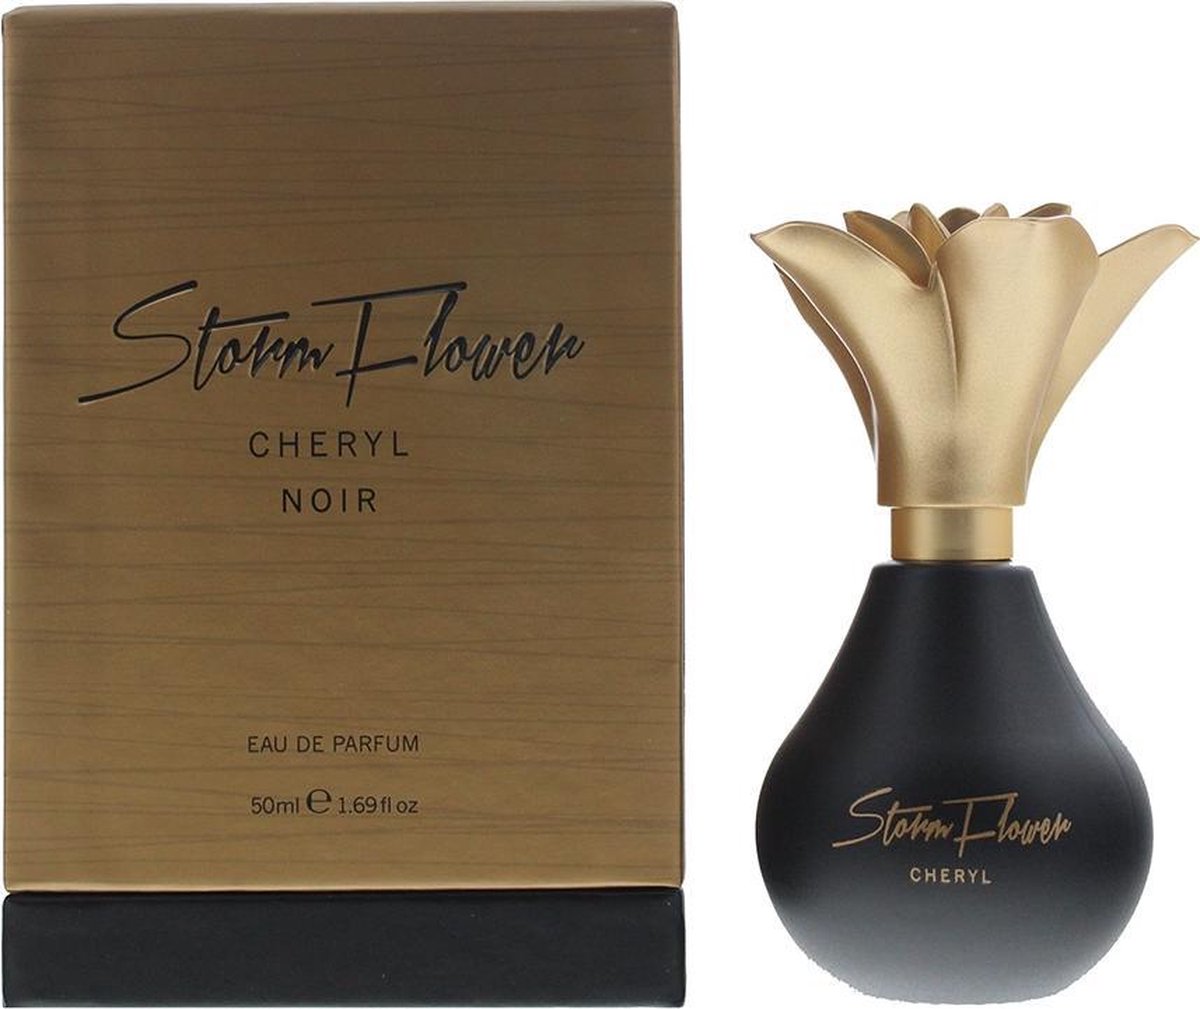 Cheryl StormFlower Noir Eau de Parfum 50ml Spray